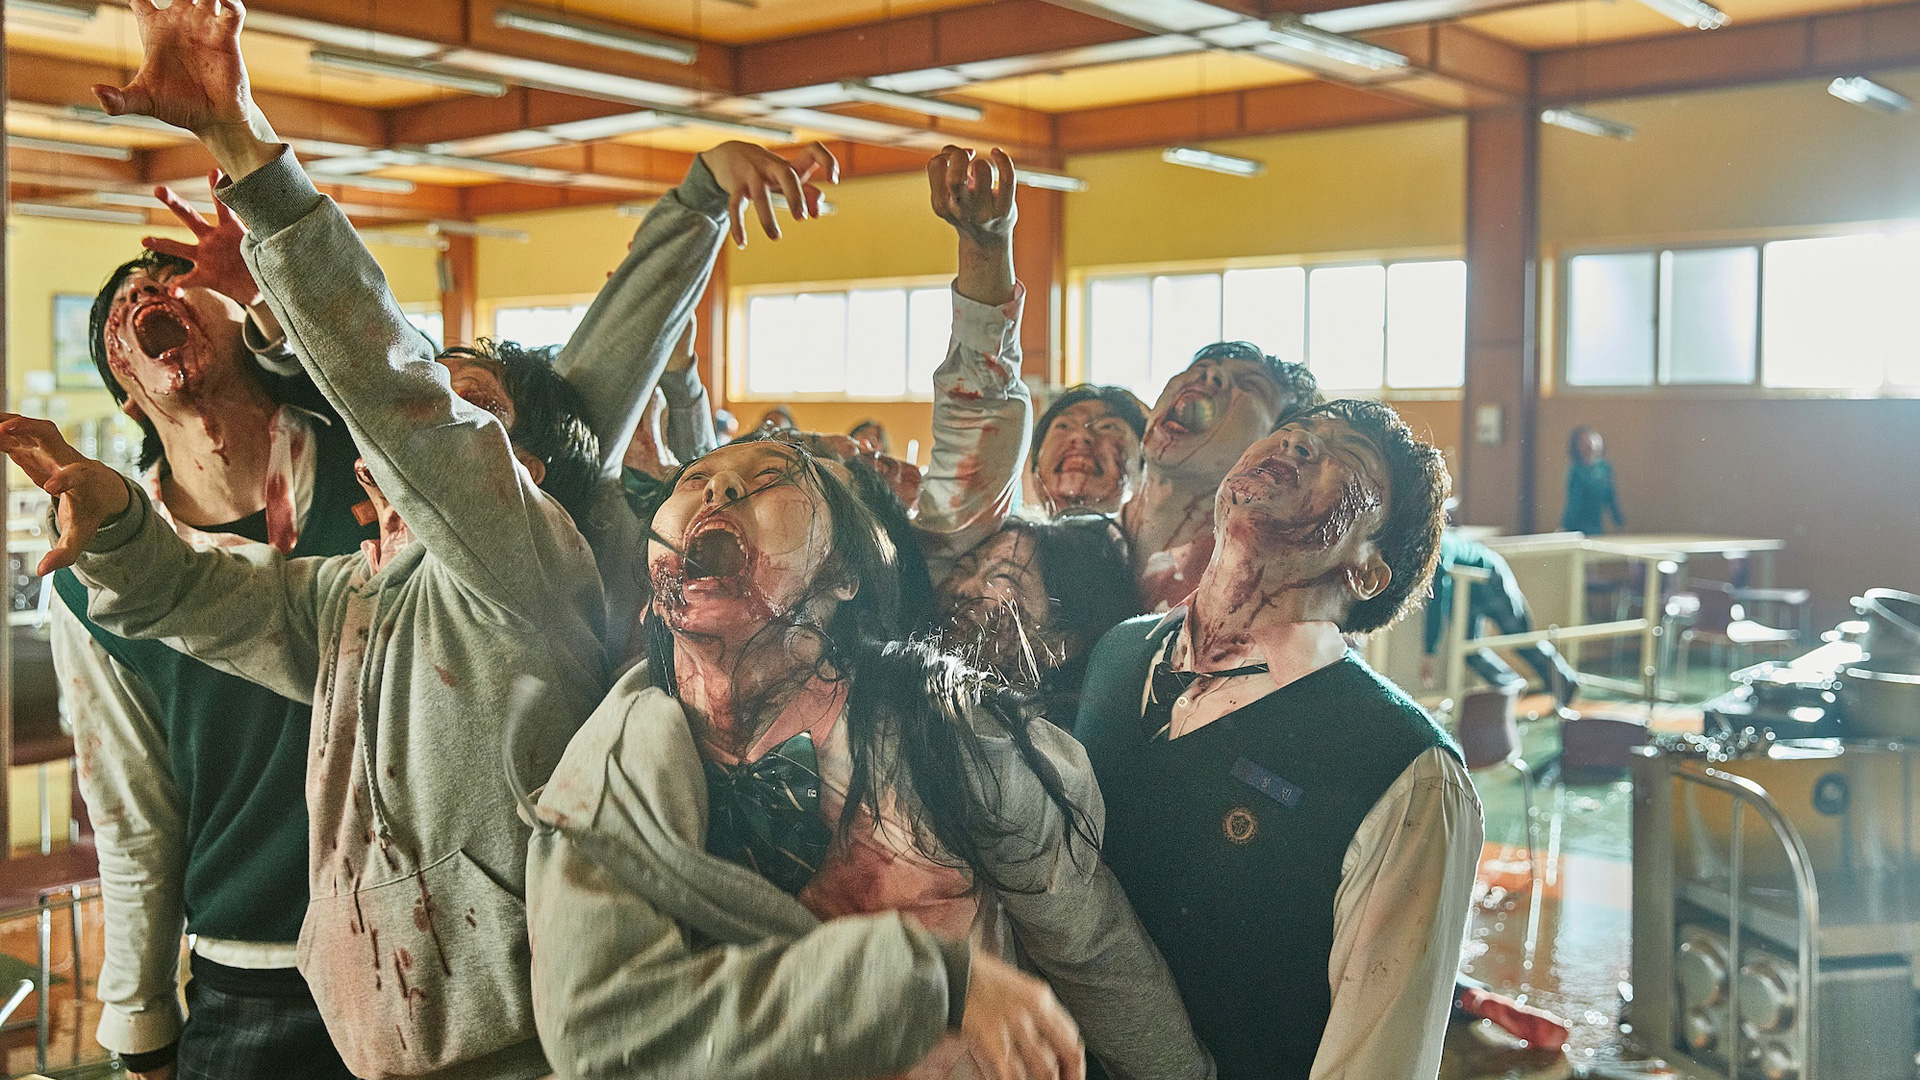 Les zombies envahissent le réfectoire de l'école, nous sommes tous morts